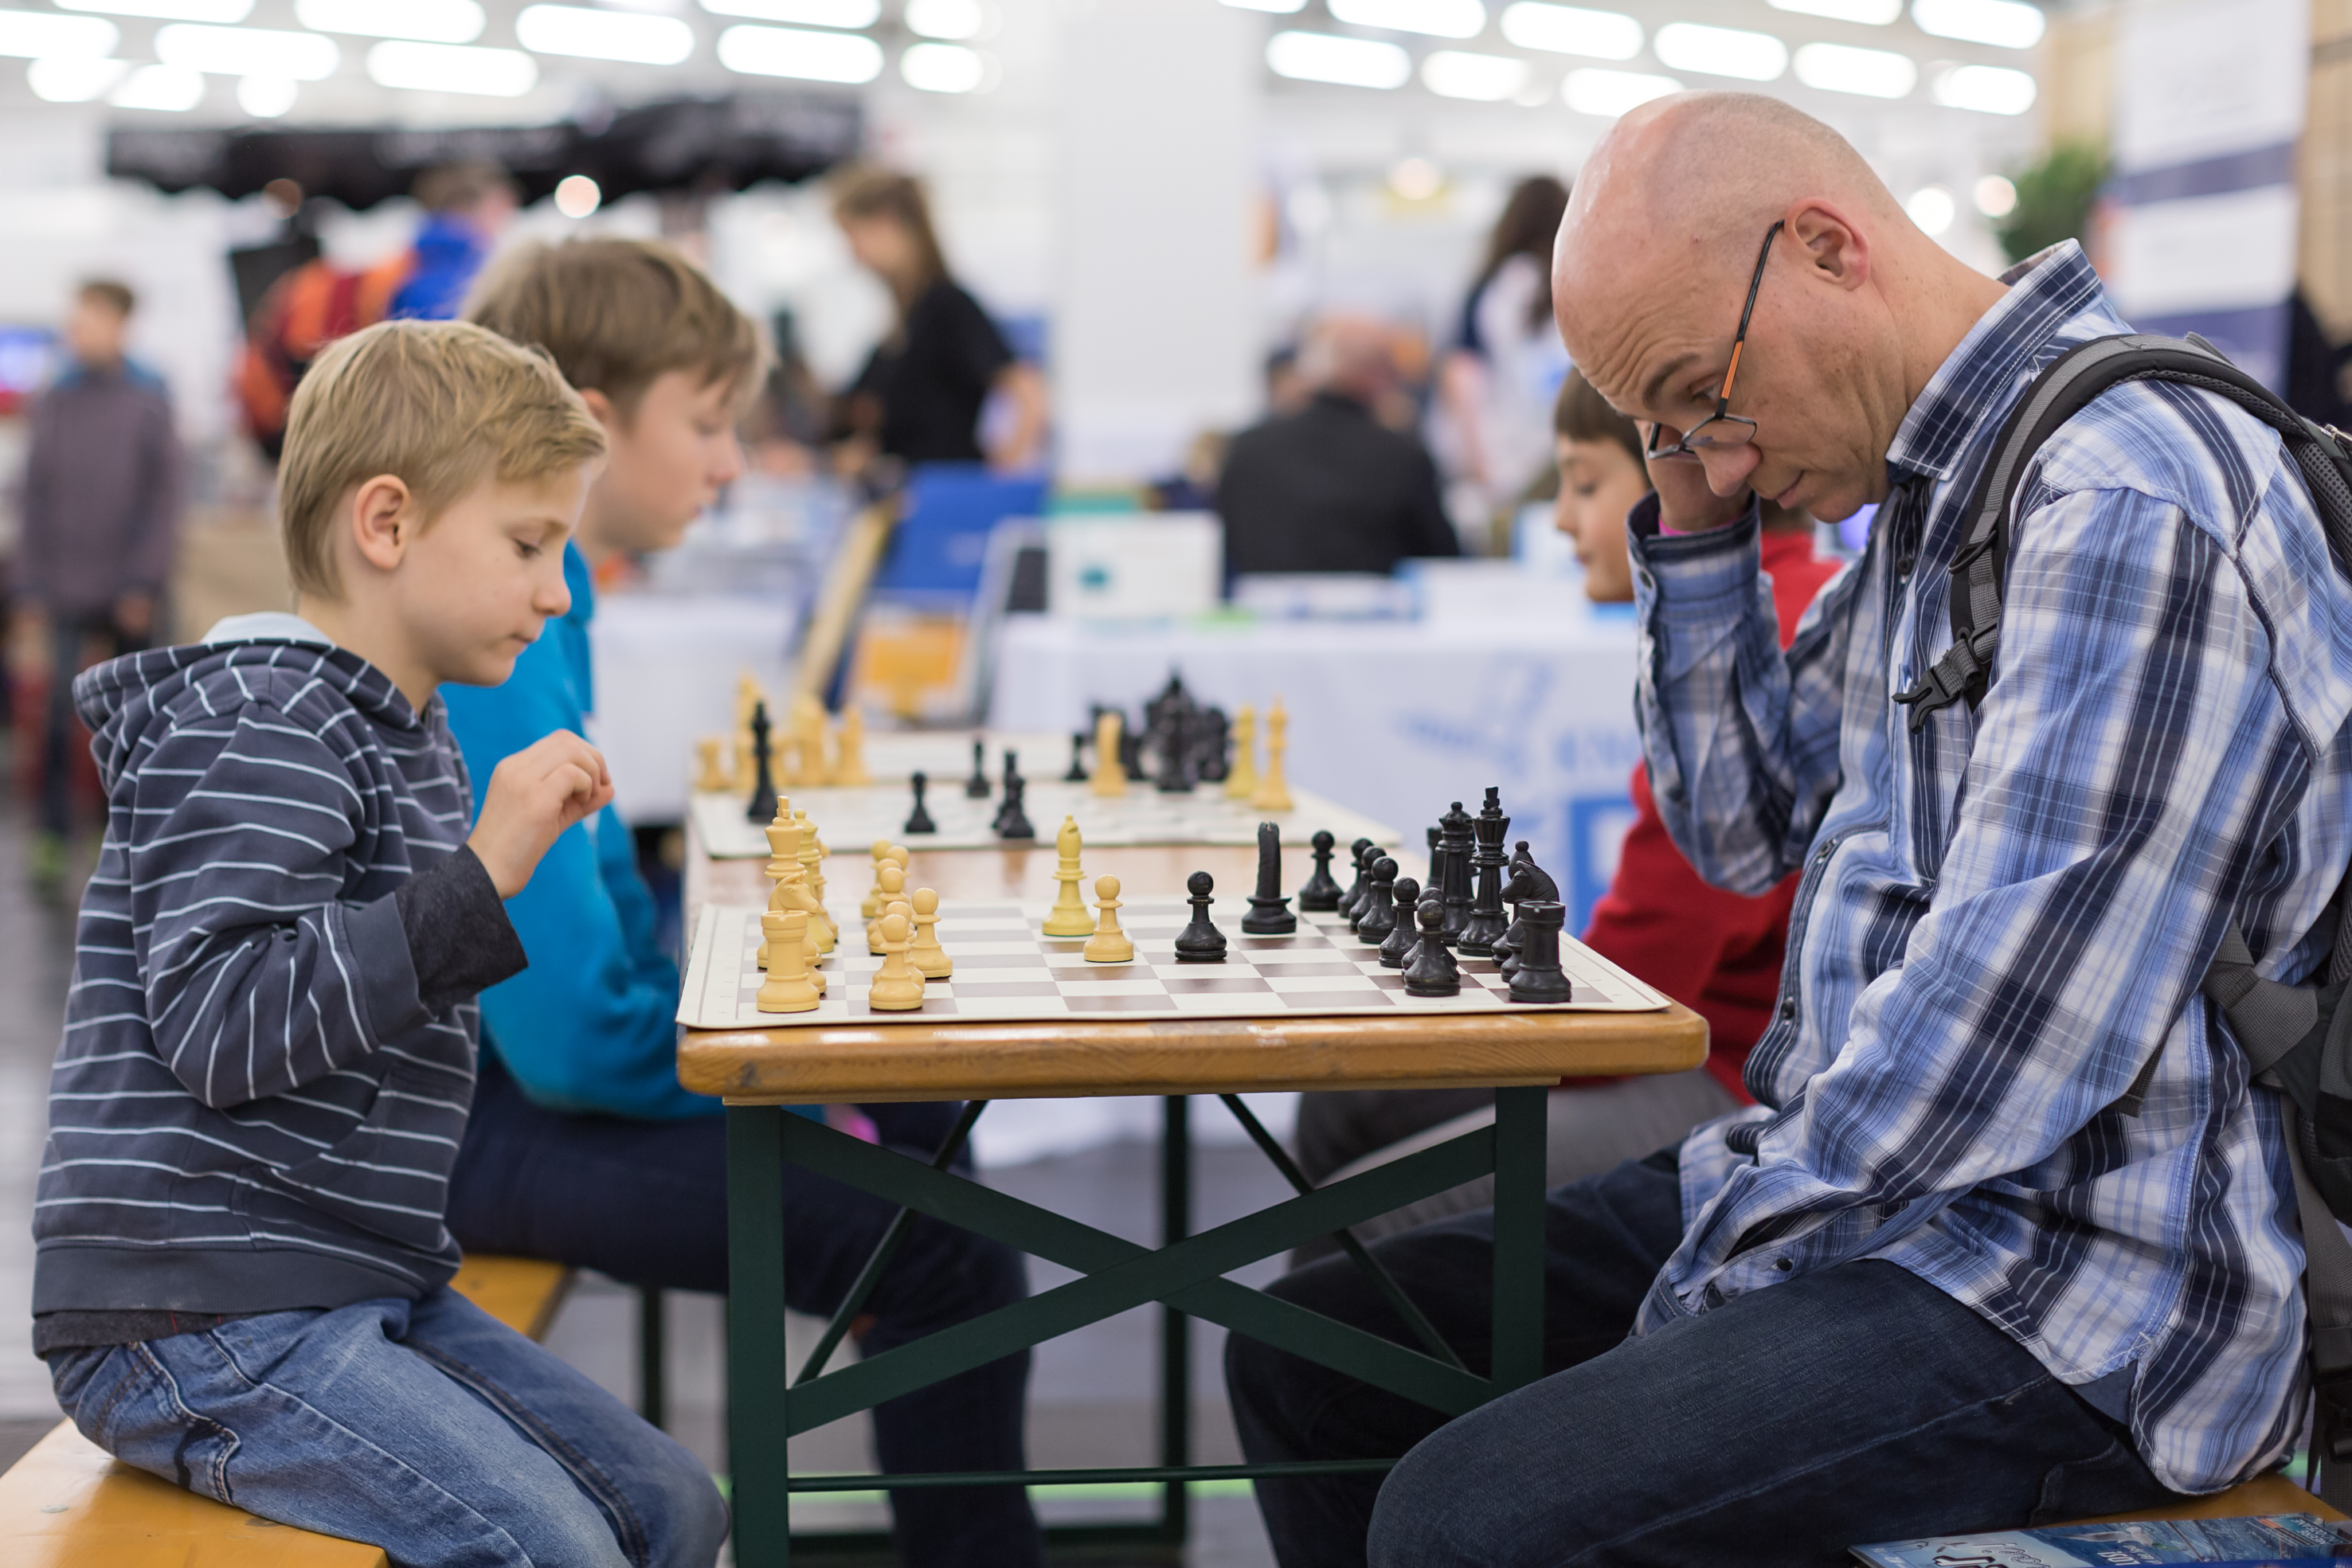 Schachspieler auf der spielwiesn 2016